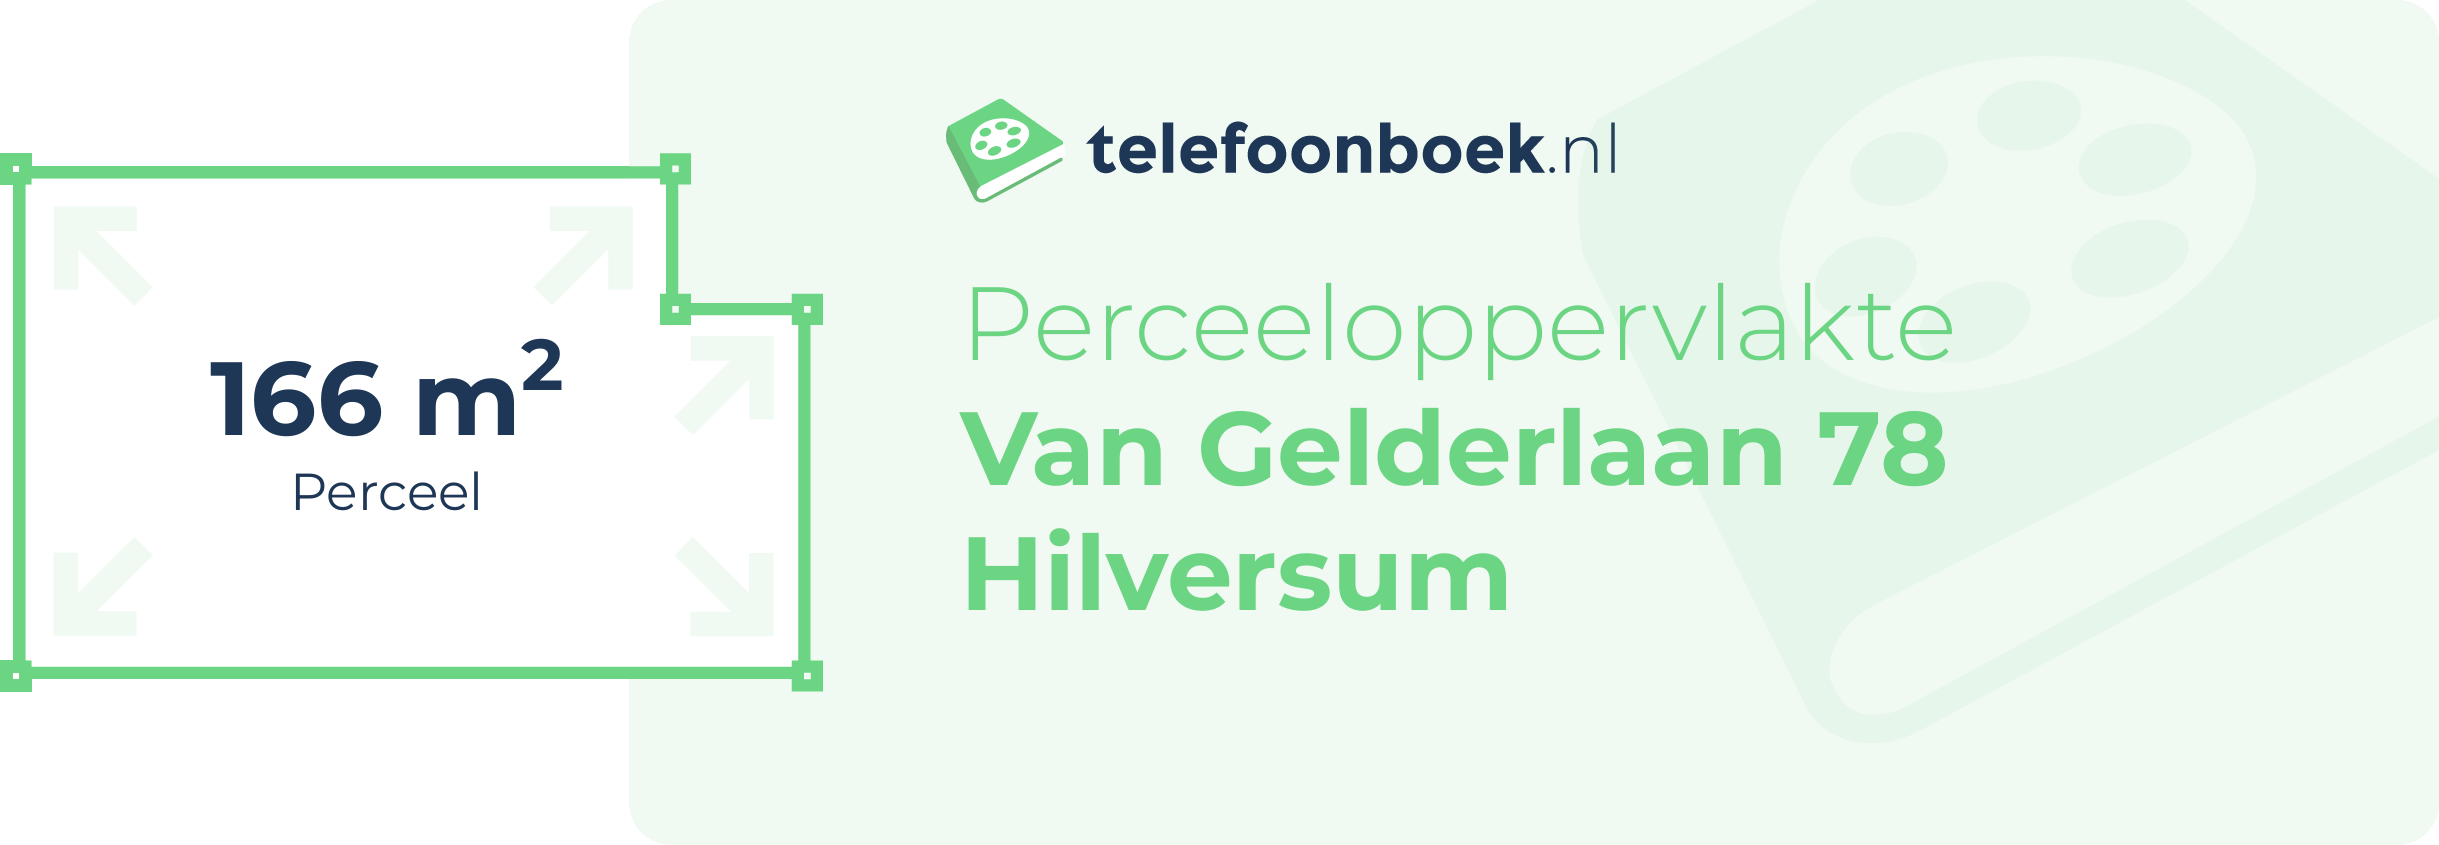 Perceeloppervlakte Van Gelderlaan 78 Hilversum